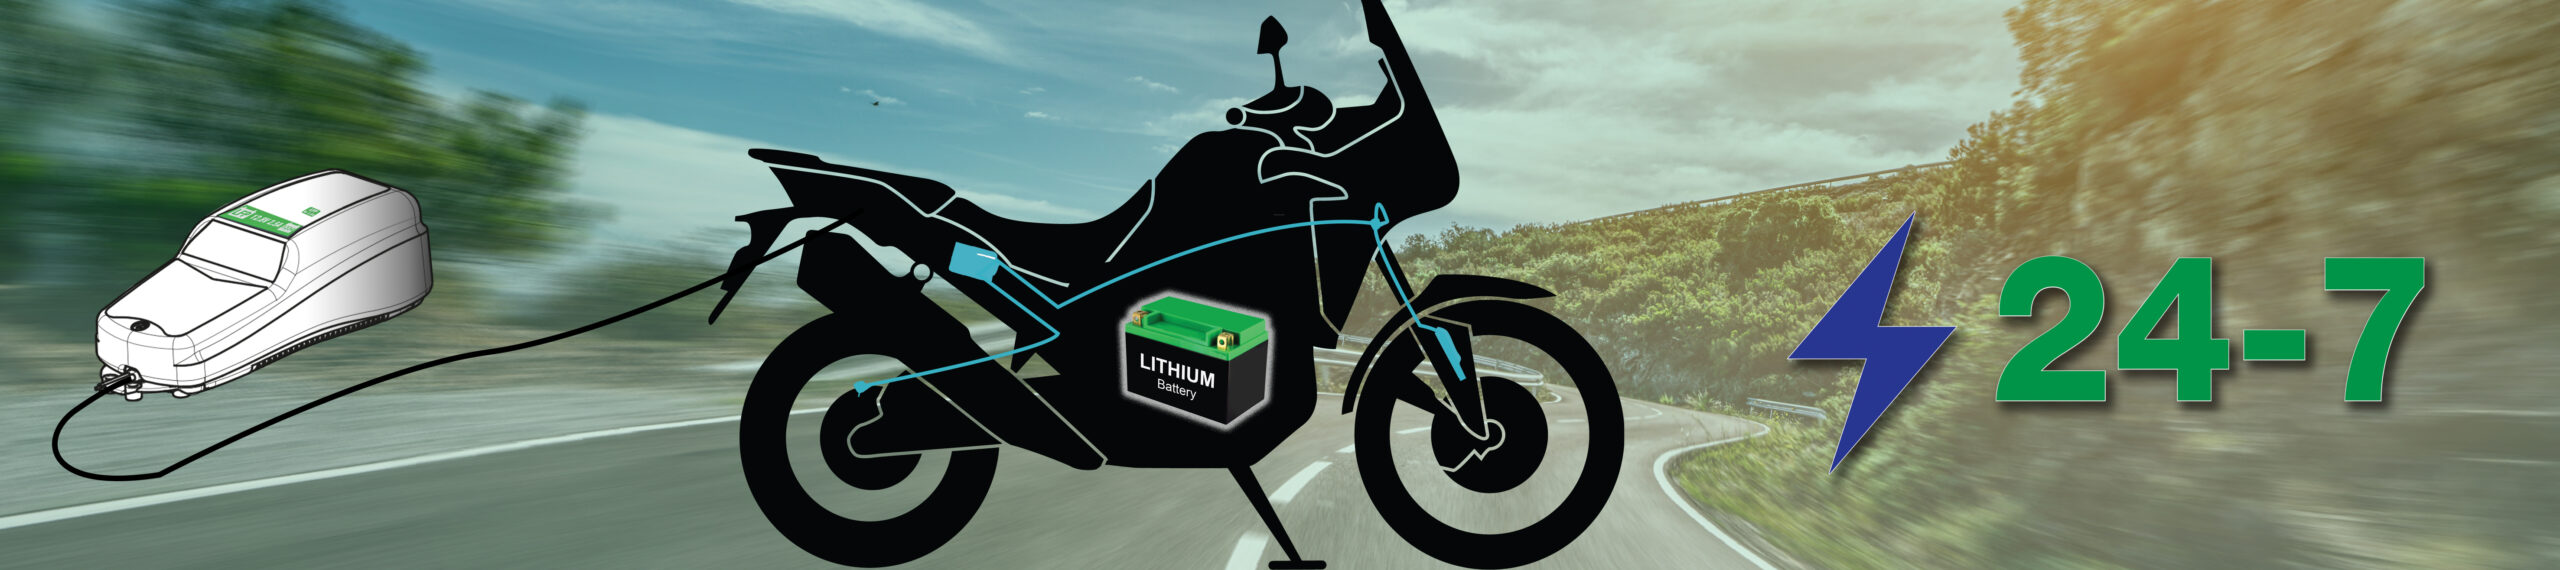 Lithium-Ionen-batterie 24-7 sichere Wartung